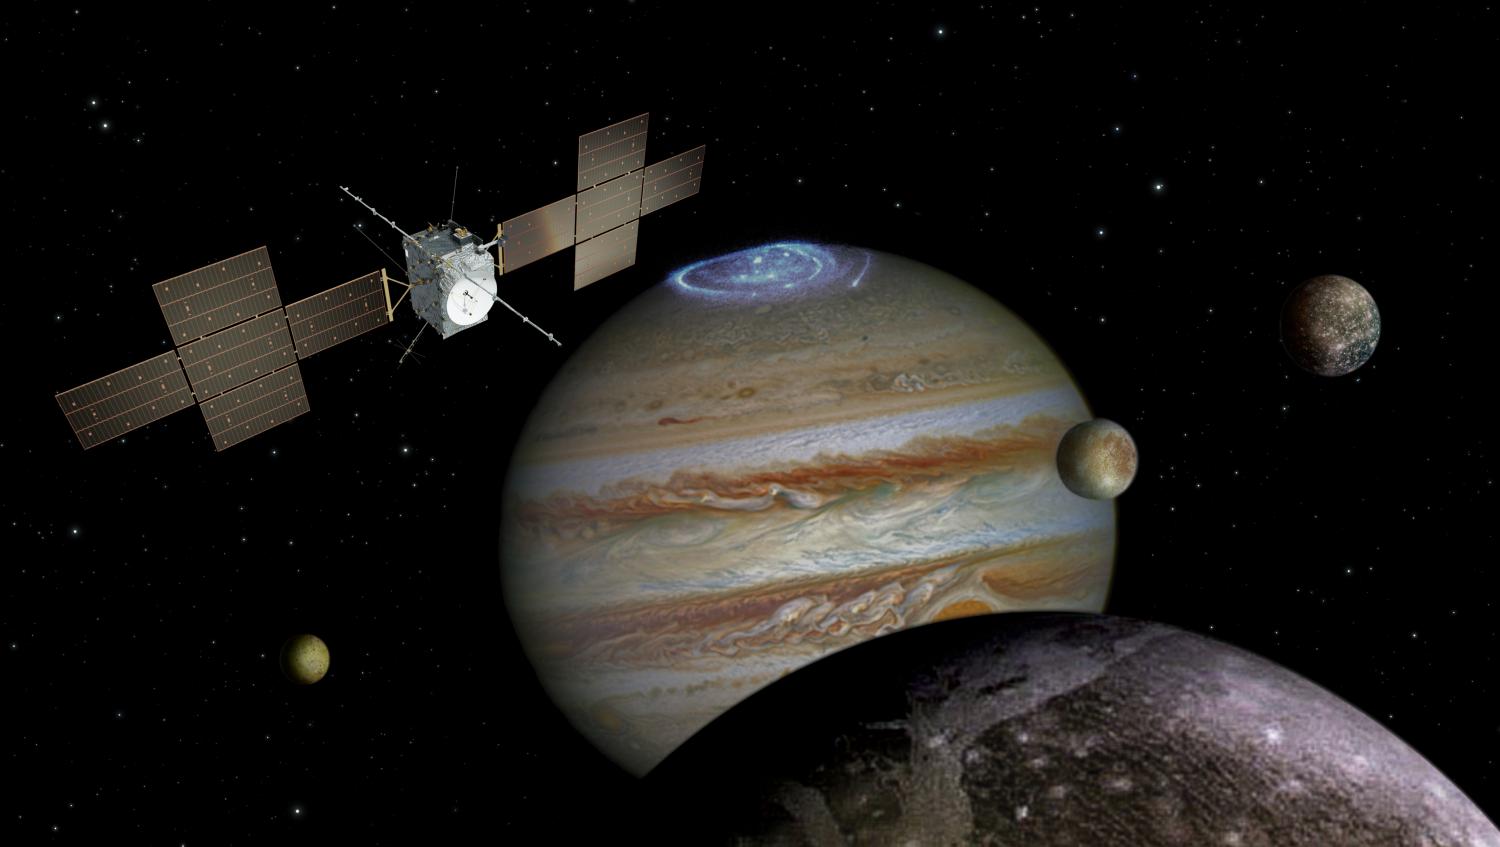 Sonda JUICE (JUpiter ICy moons Explorer) bude pomocí sady citlivých přístrojů podrobně zkoumat Jupiter a tři jeho ledové měsíce. Kredit: spacecraft: ESA/ATG medialab; Jupiter: NASA/ESA/J. Nichols (University of Leicester); Ganymede: NASA/JPL; Io: NAS